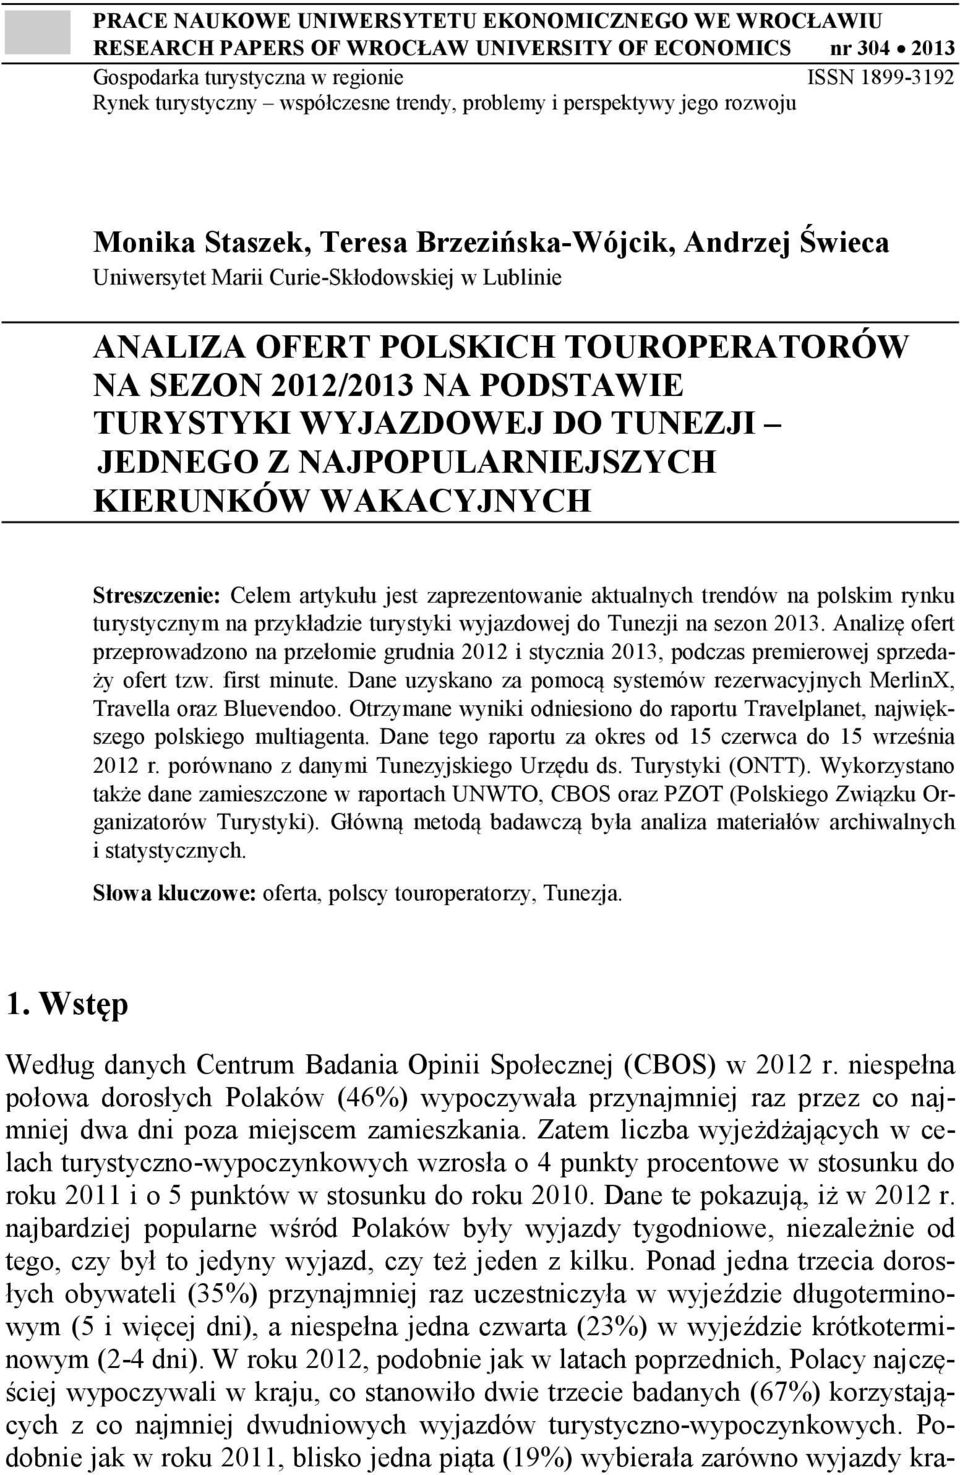 NA SEZON 2012/2013 NA PODSTAWIE TURYSTYKI WYJAZDOWEJ DO TUNEZJI JEDNEGO Z NAJPOPULARNIEJSZYCH KIERUNKÓW WAKACYJNYCH Streszczenie: Celem artykułu jest zaprezentowanie aktualnych trendów na polskim